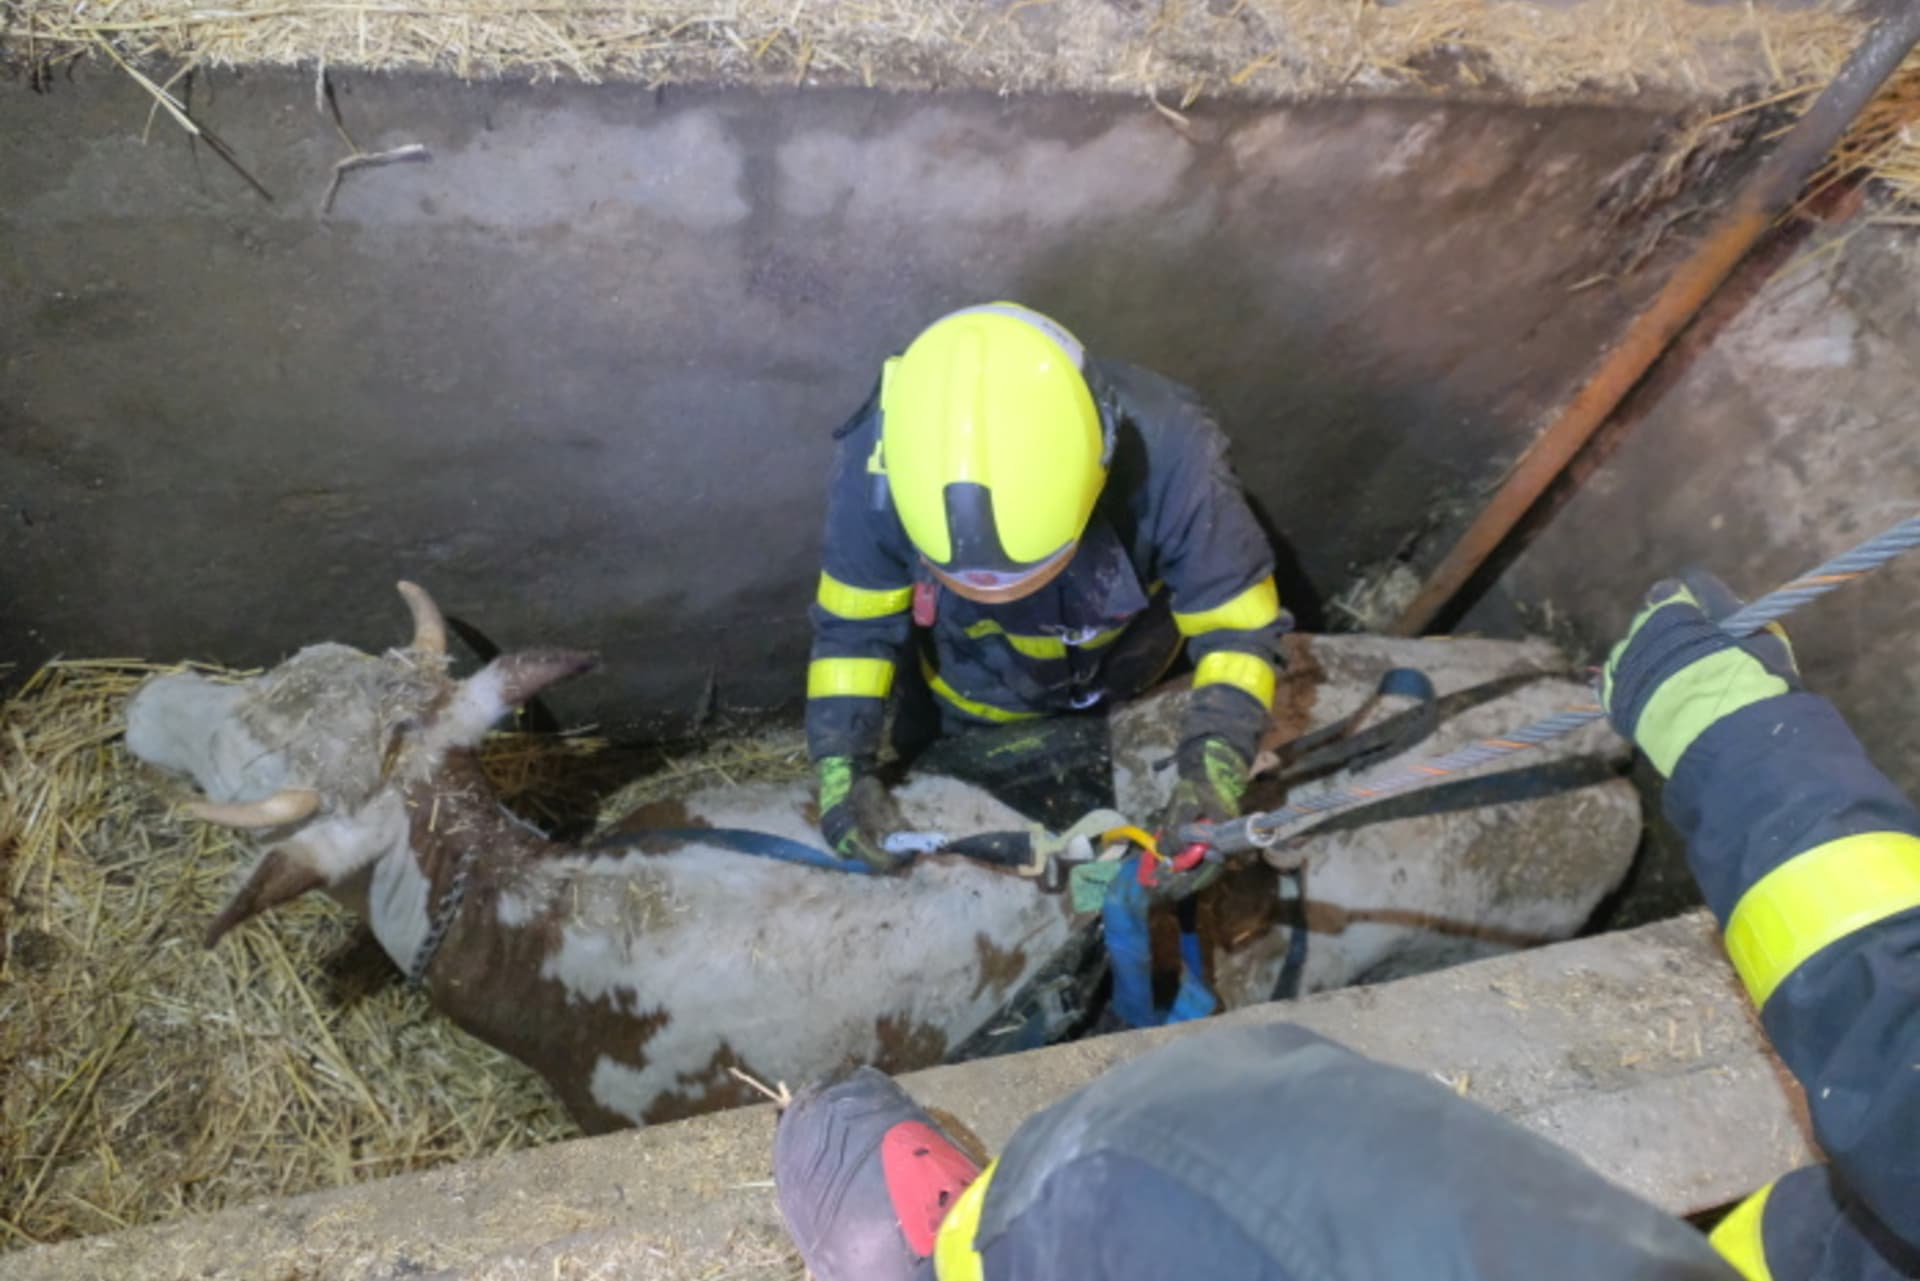  V Ostravě-Nové Bělé hasiči zachránili čtyřsetkilogramovou krávu, která se propadla do jímky. 